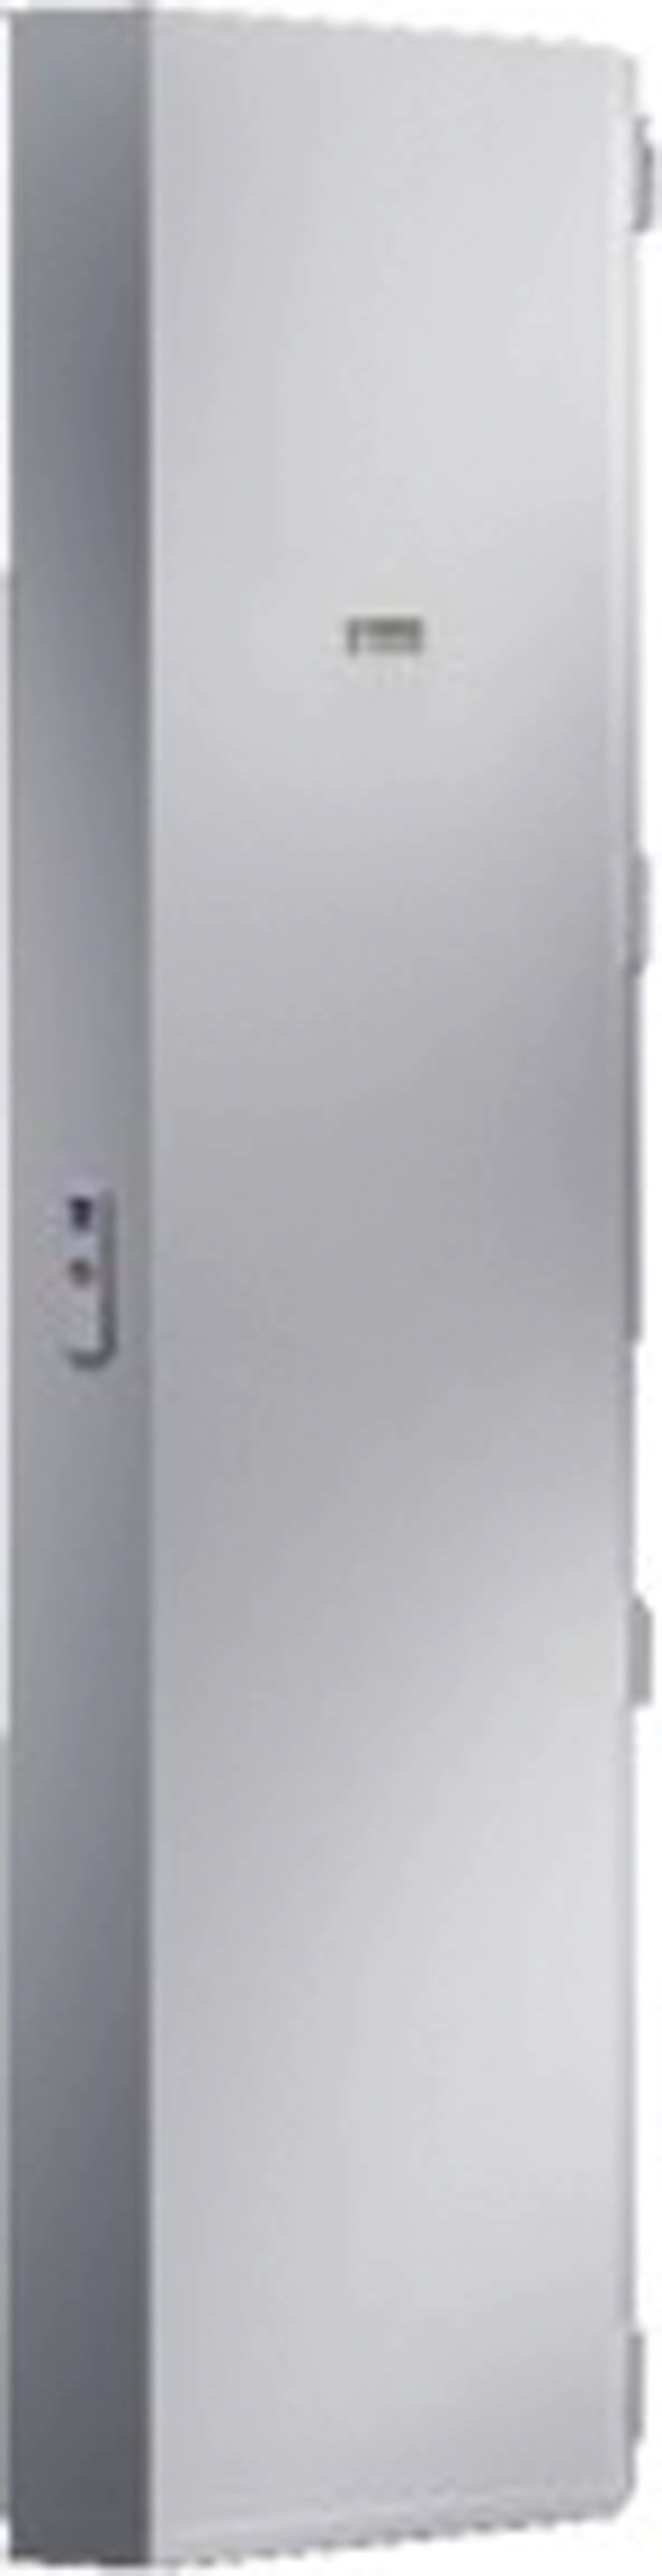 Rittal - Porte profilée pour le montage de modules de refroidissement -VX25 - L600 H1800